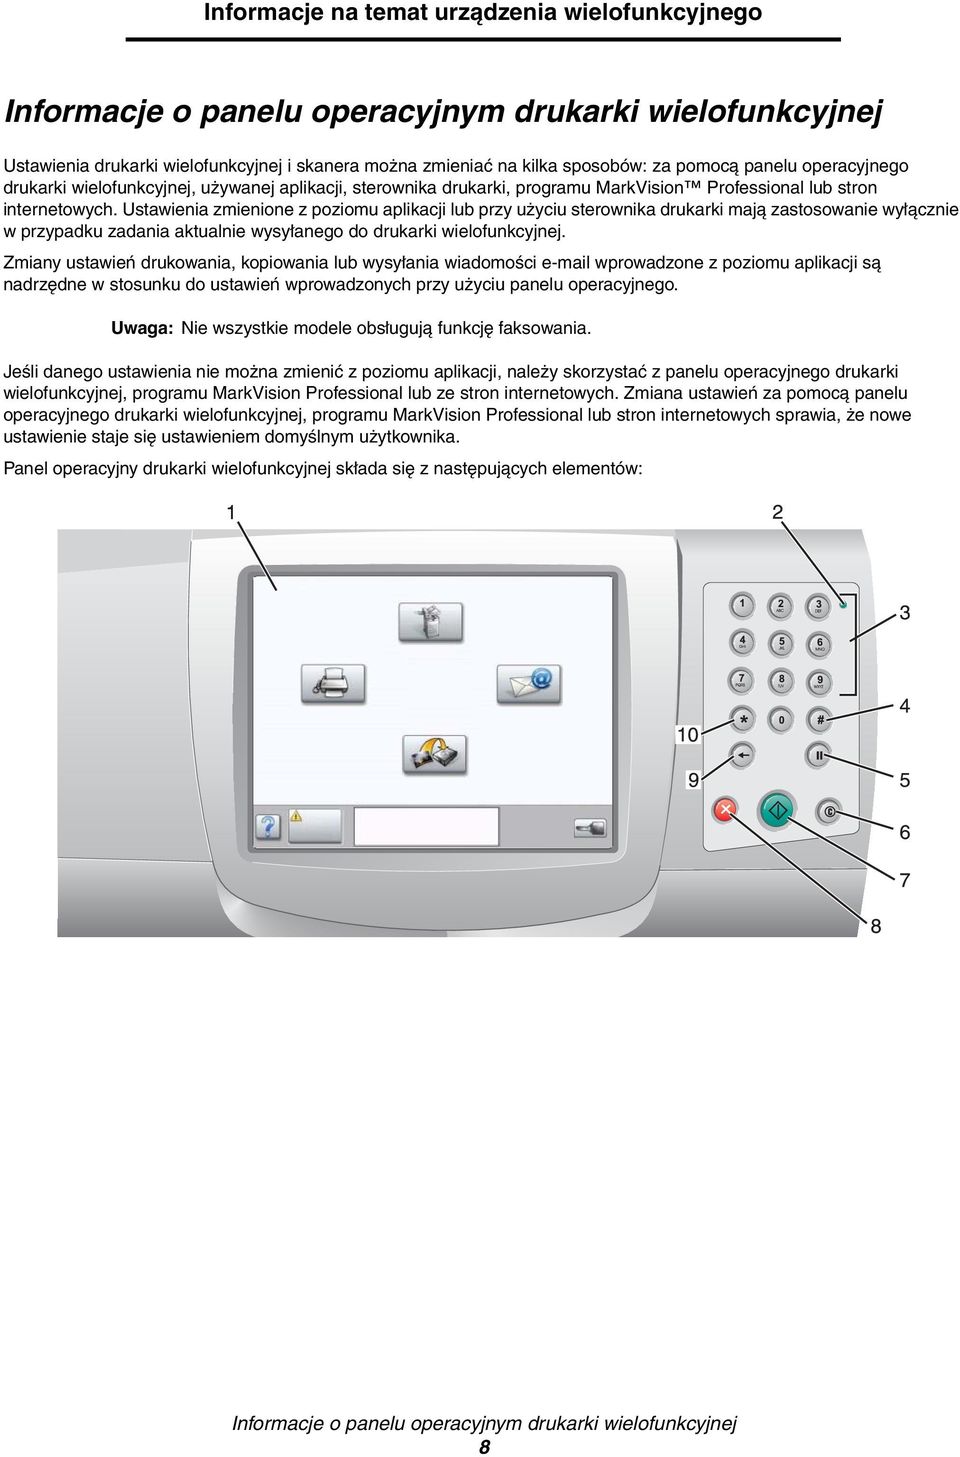 Ustawienia zmienione z poziomu aplikacji lub przy użyciu sterownika drukarki mają zastosowanie wyłącznie w przypadku zadania aktualnie wysyłanego do drukarki wielofunkcyjnej.